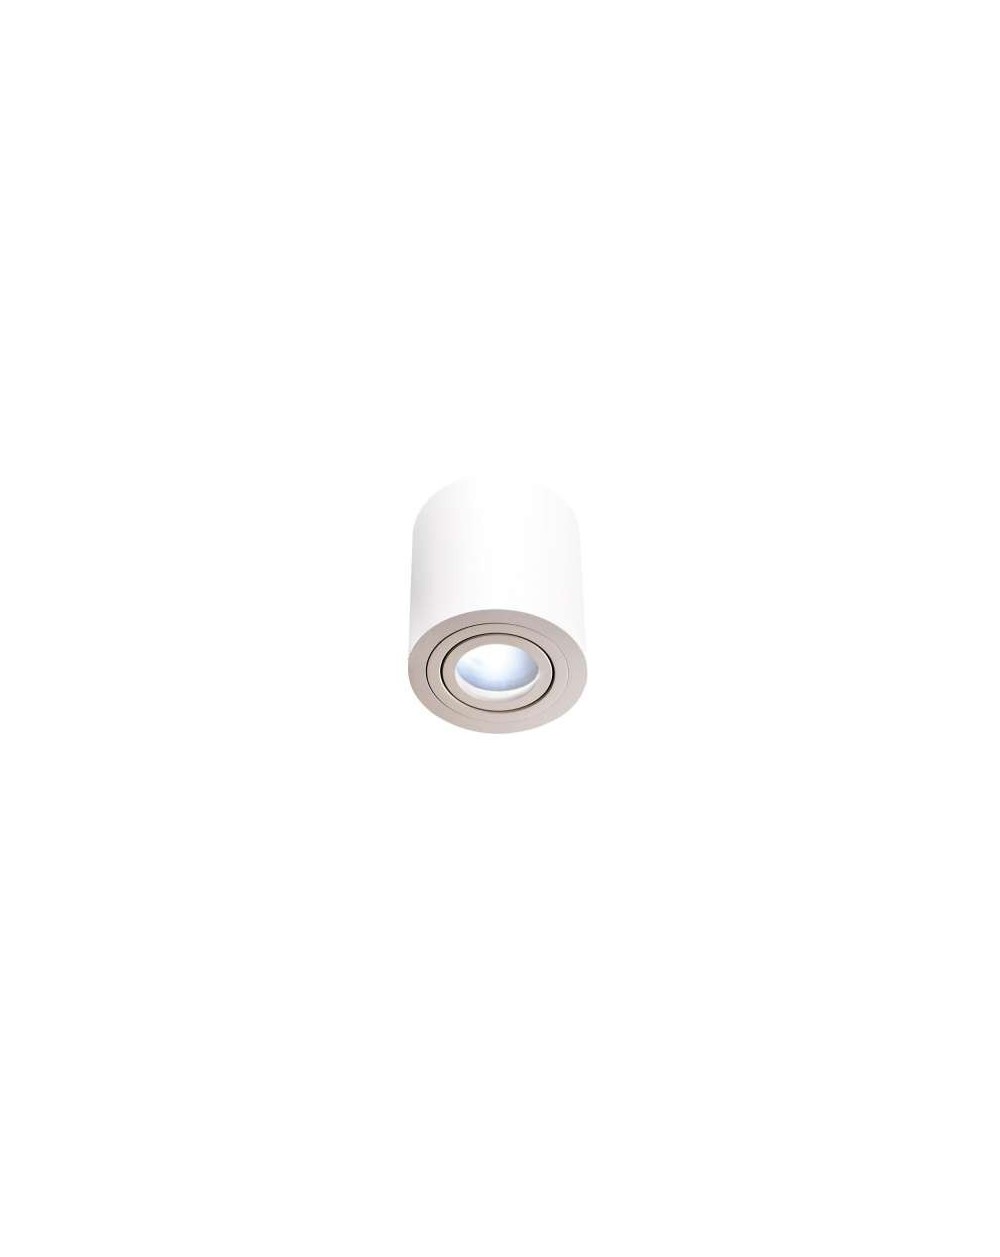 Lampa sufitowa / natynkowa Rullo Bianco IP44 - Orlicki Design biała, okrągła do łazienki i kuchni